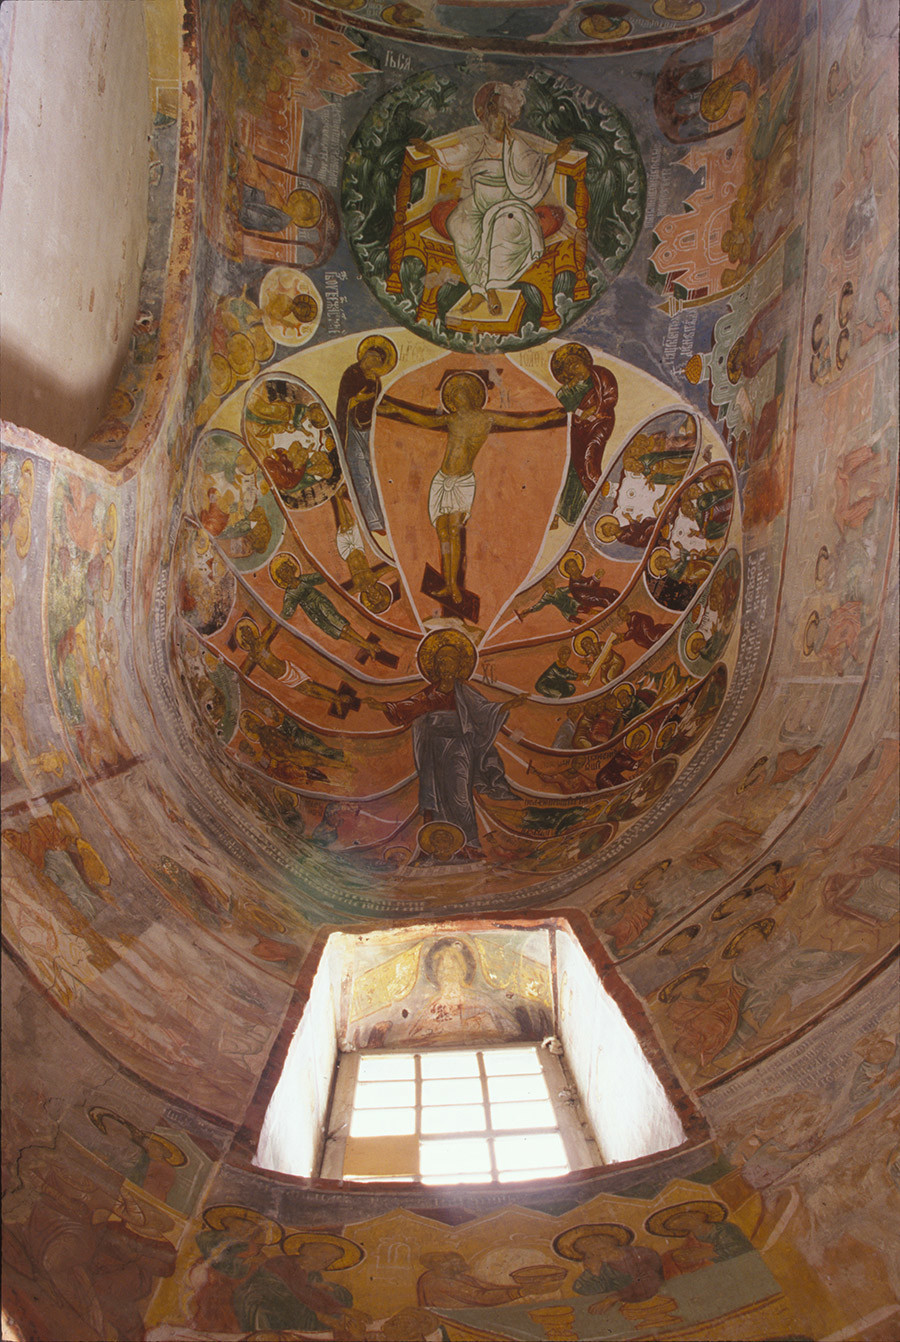 Catedral de la Anunciación. Diaconicón (parte derecha del ábside). Fresco en el techo de las Pasiones (martirio) de los Apóstoles, con Cristo en el centro y Cristo crucificado bajo la imagen del Señor Dios Sabaoth. 20 de junio de 2000.